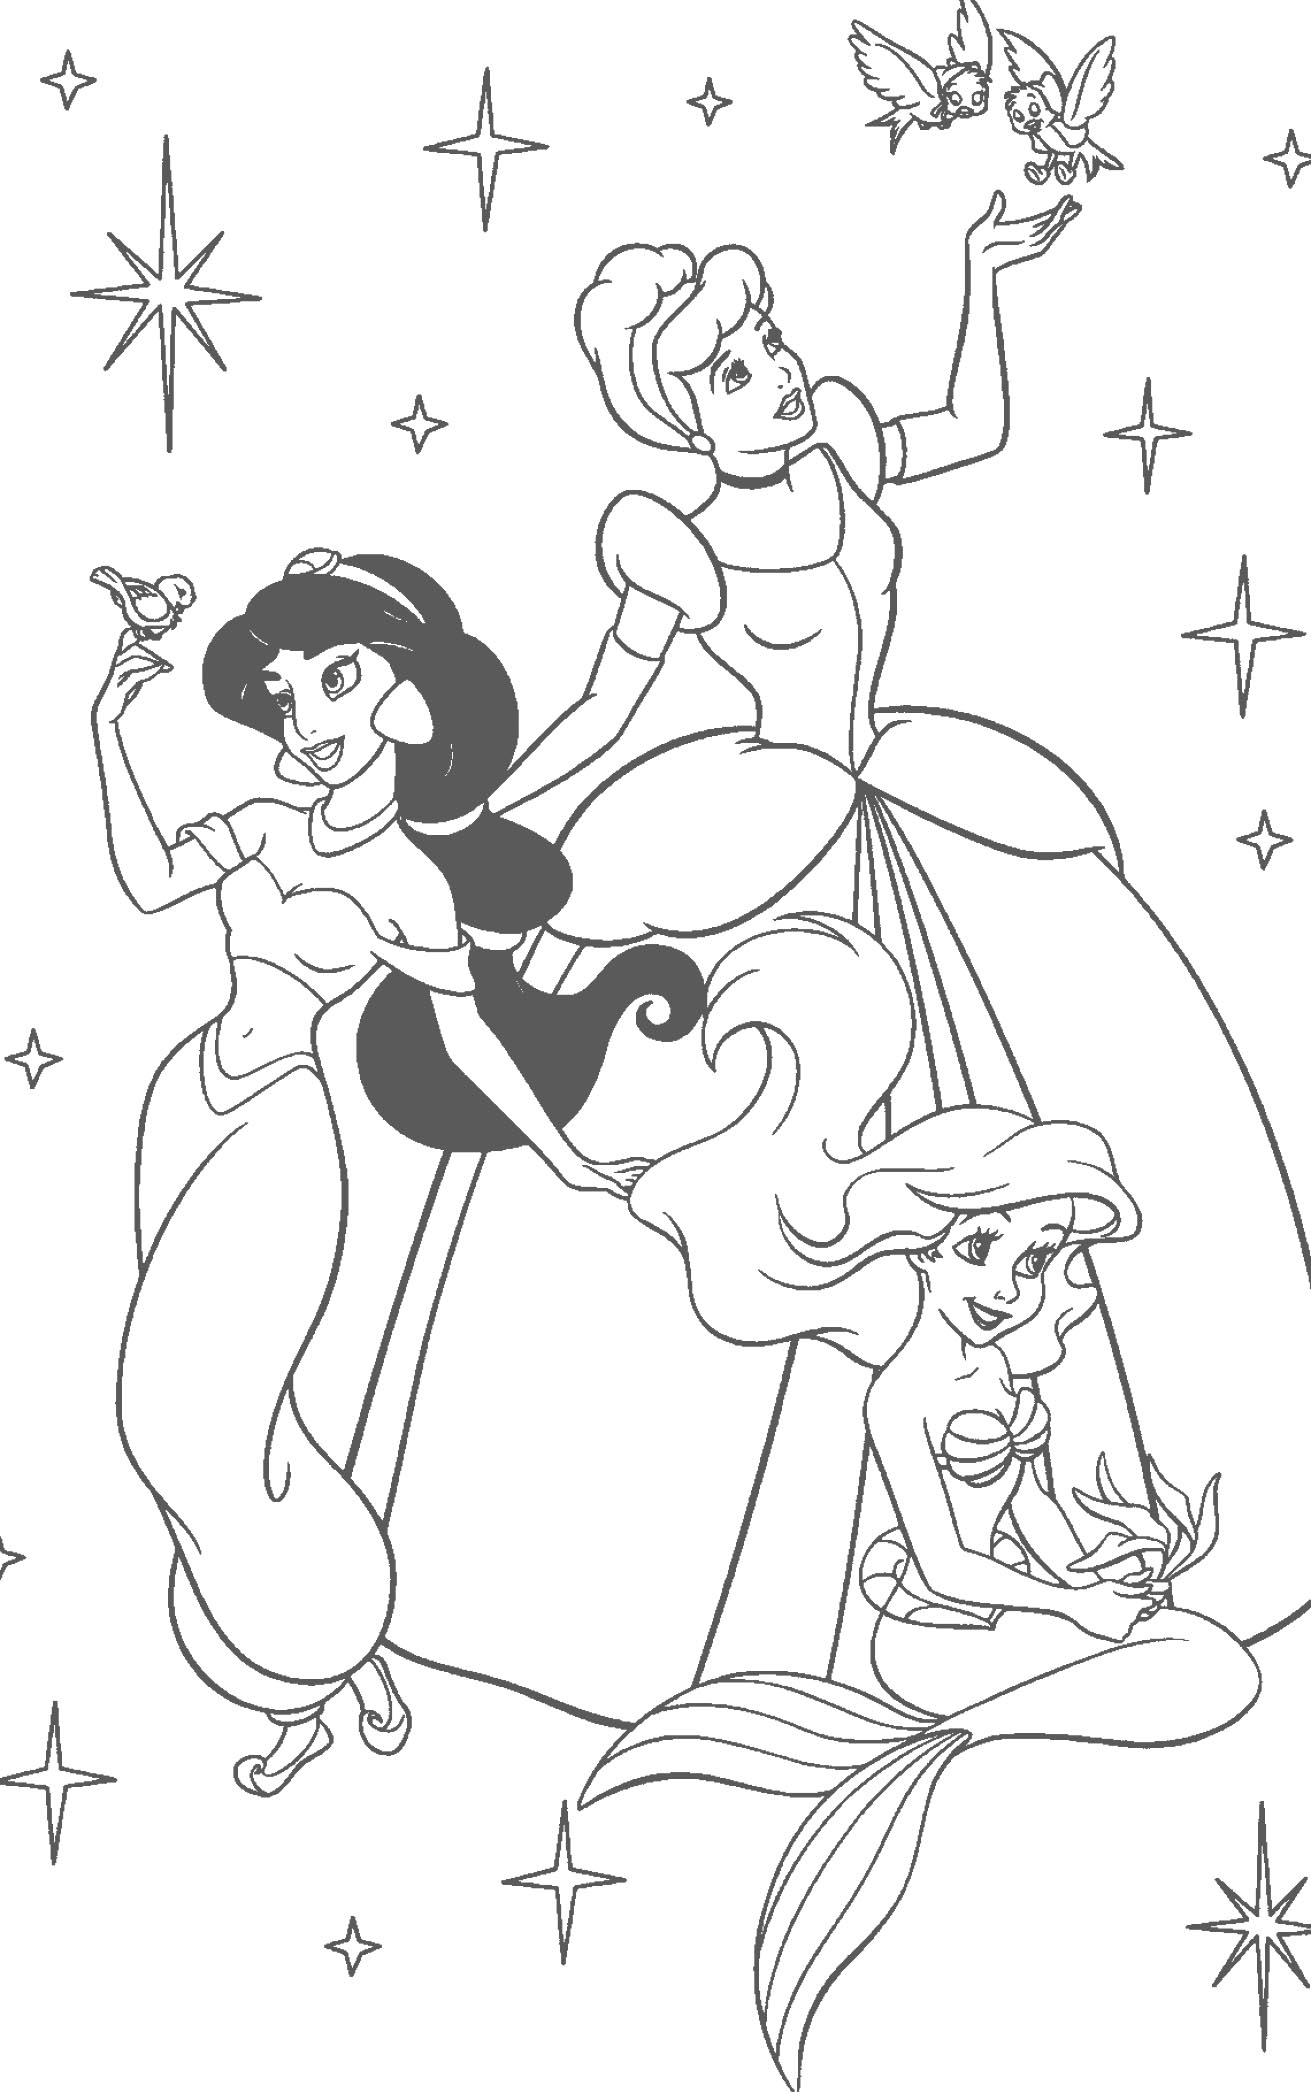 Pintar Desenhos de Princesas da Disney  Branca de Neve Ariel Cinderela  Jasmine e Bela Adormecida 